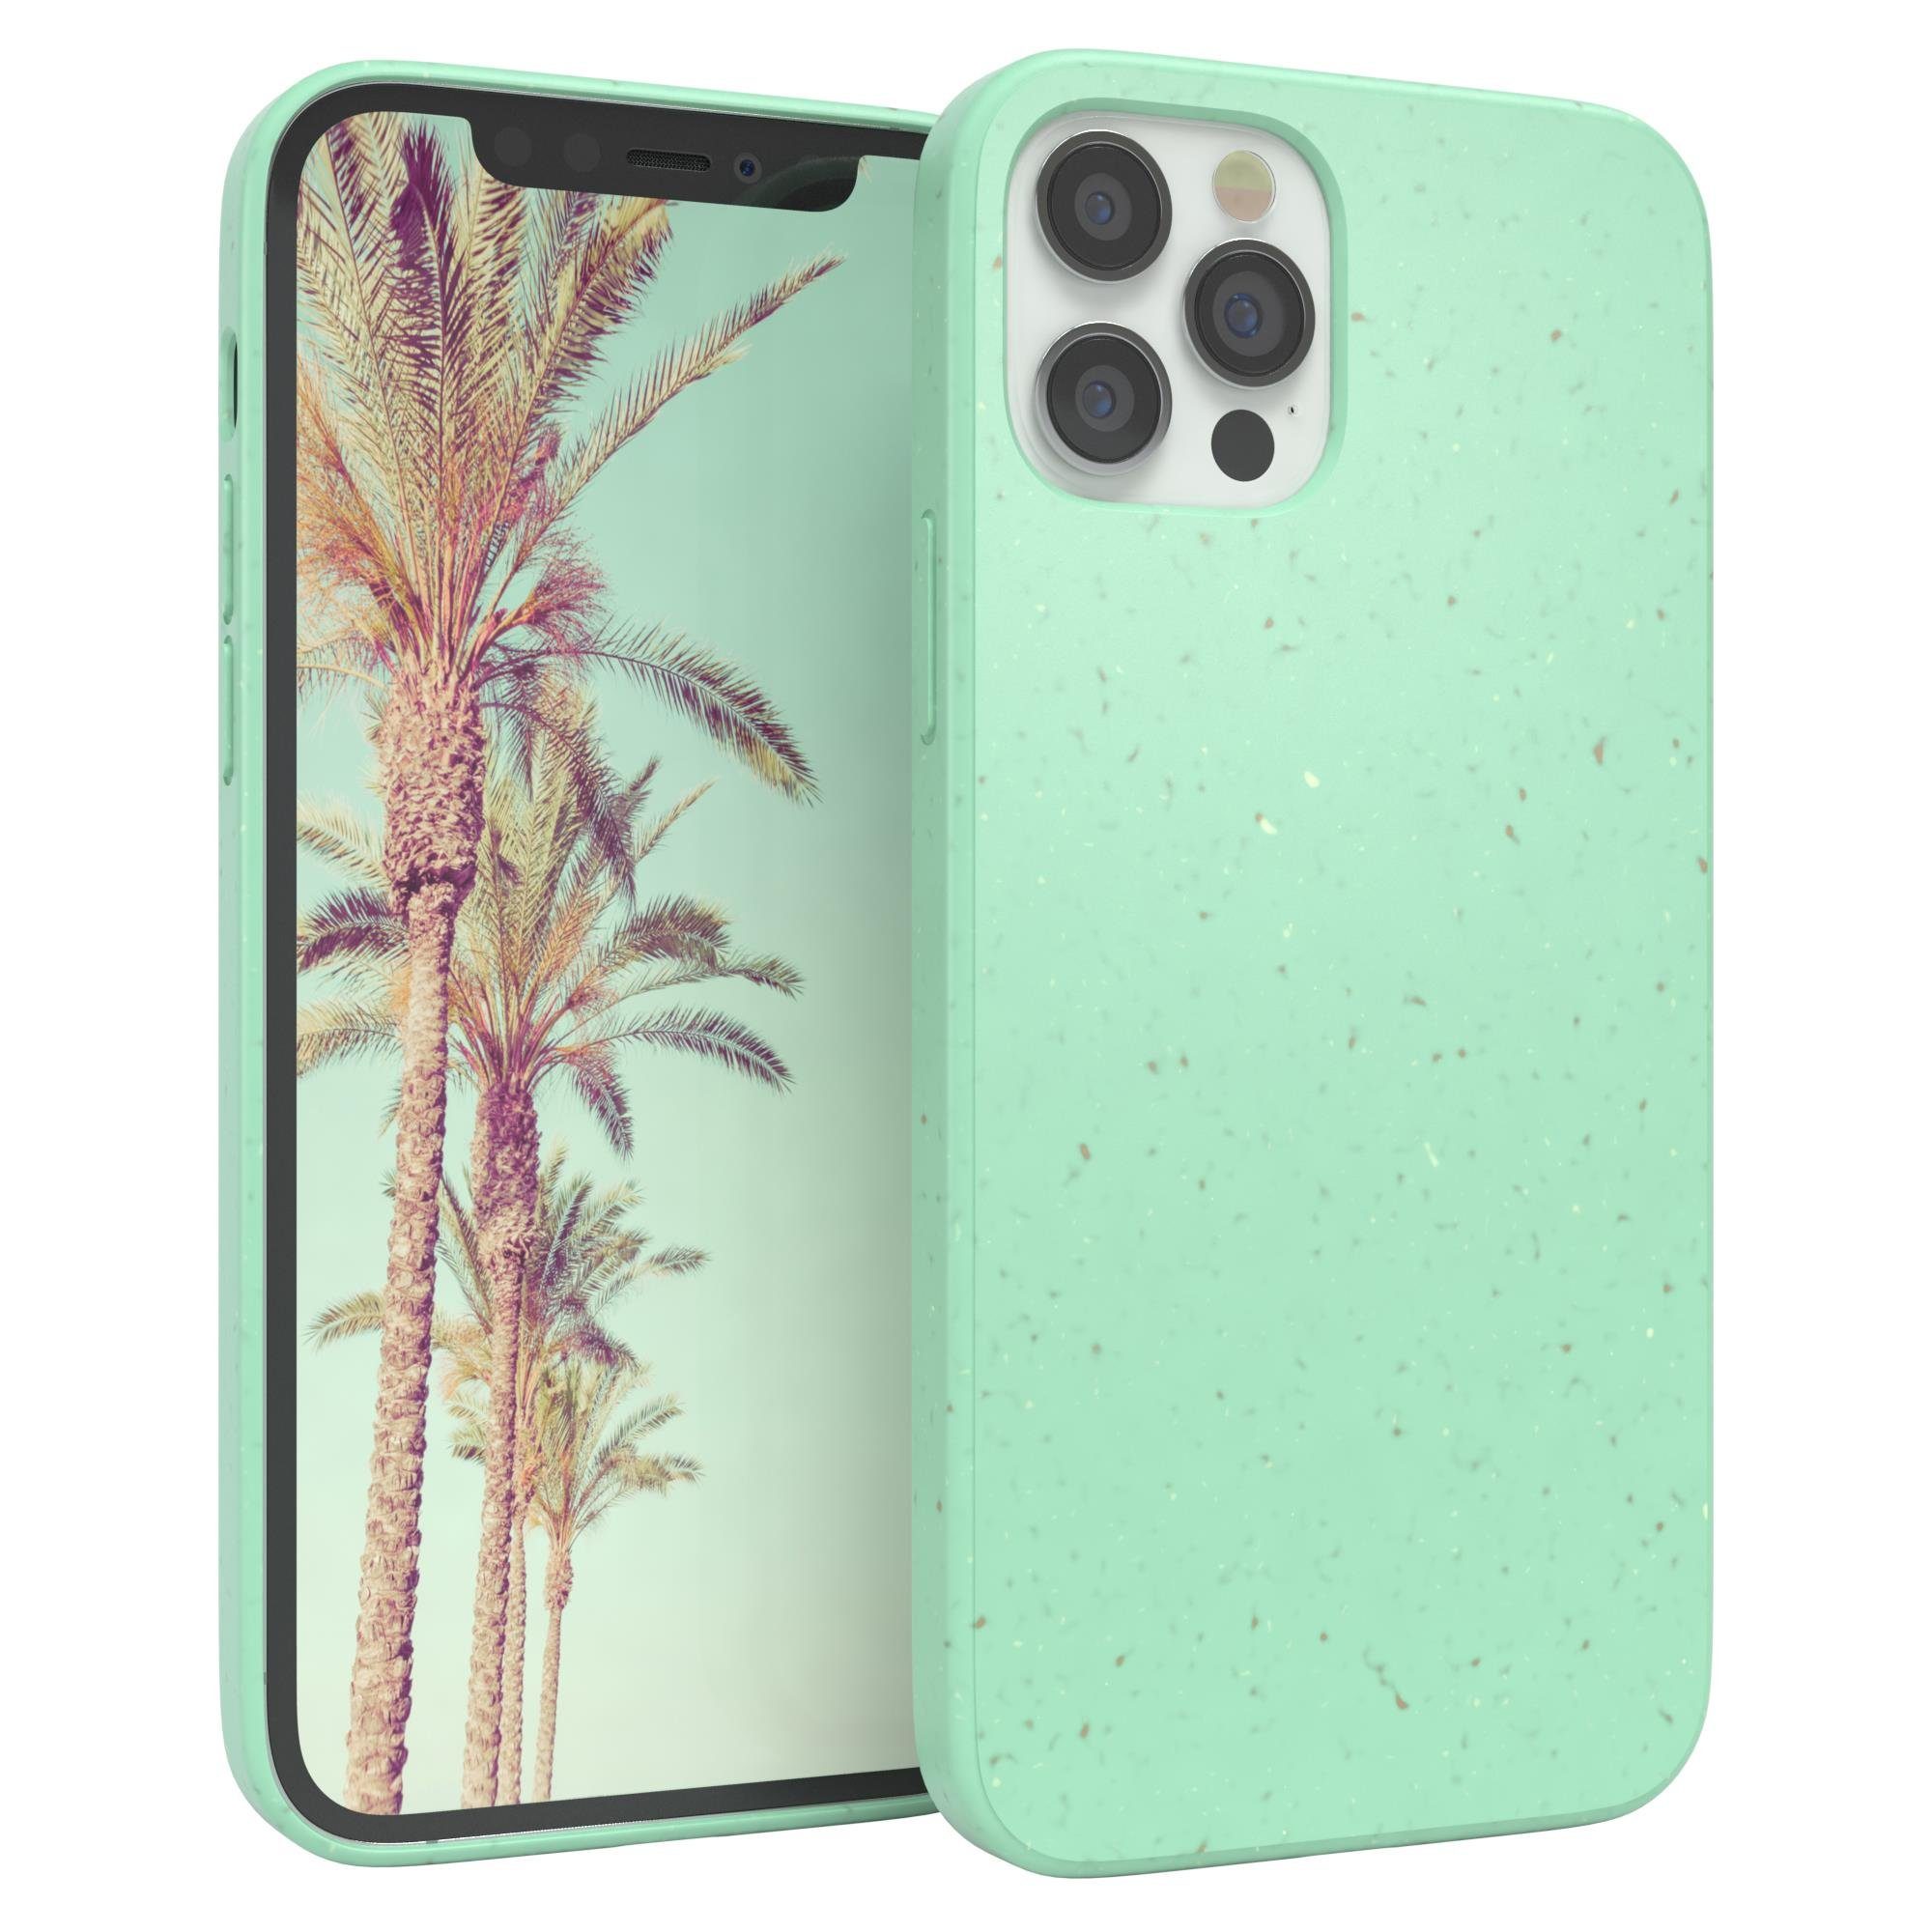 EAZY CASE Handyhülle Bio Case für Apple iPhone 12 / iPhone 12 Pro 6,1 Zoll, Slimcover aus Pflanzenfasern Schutzhülle kratzfest phone case Grün